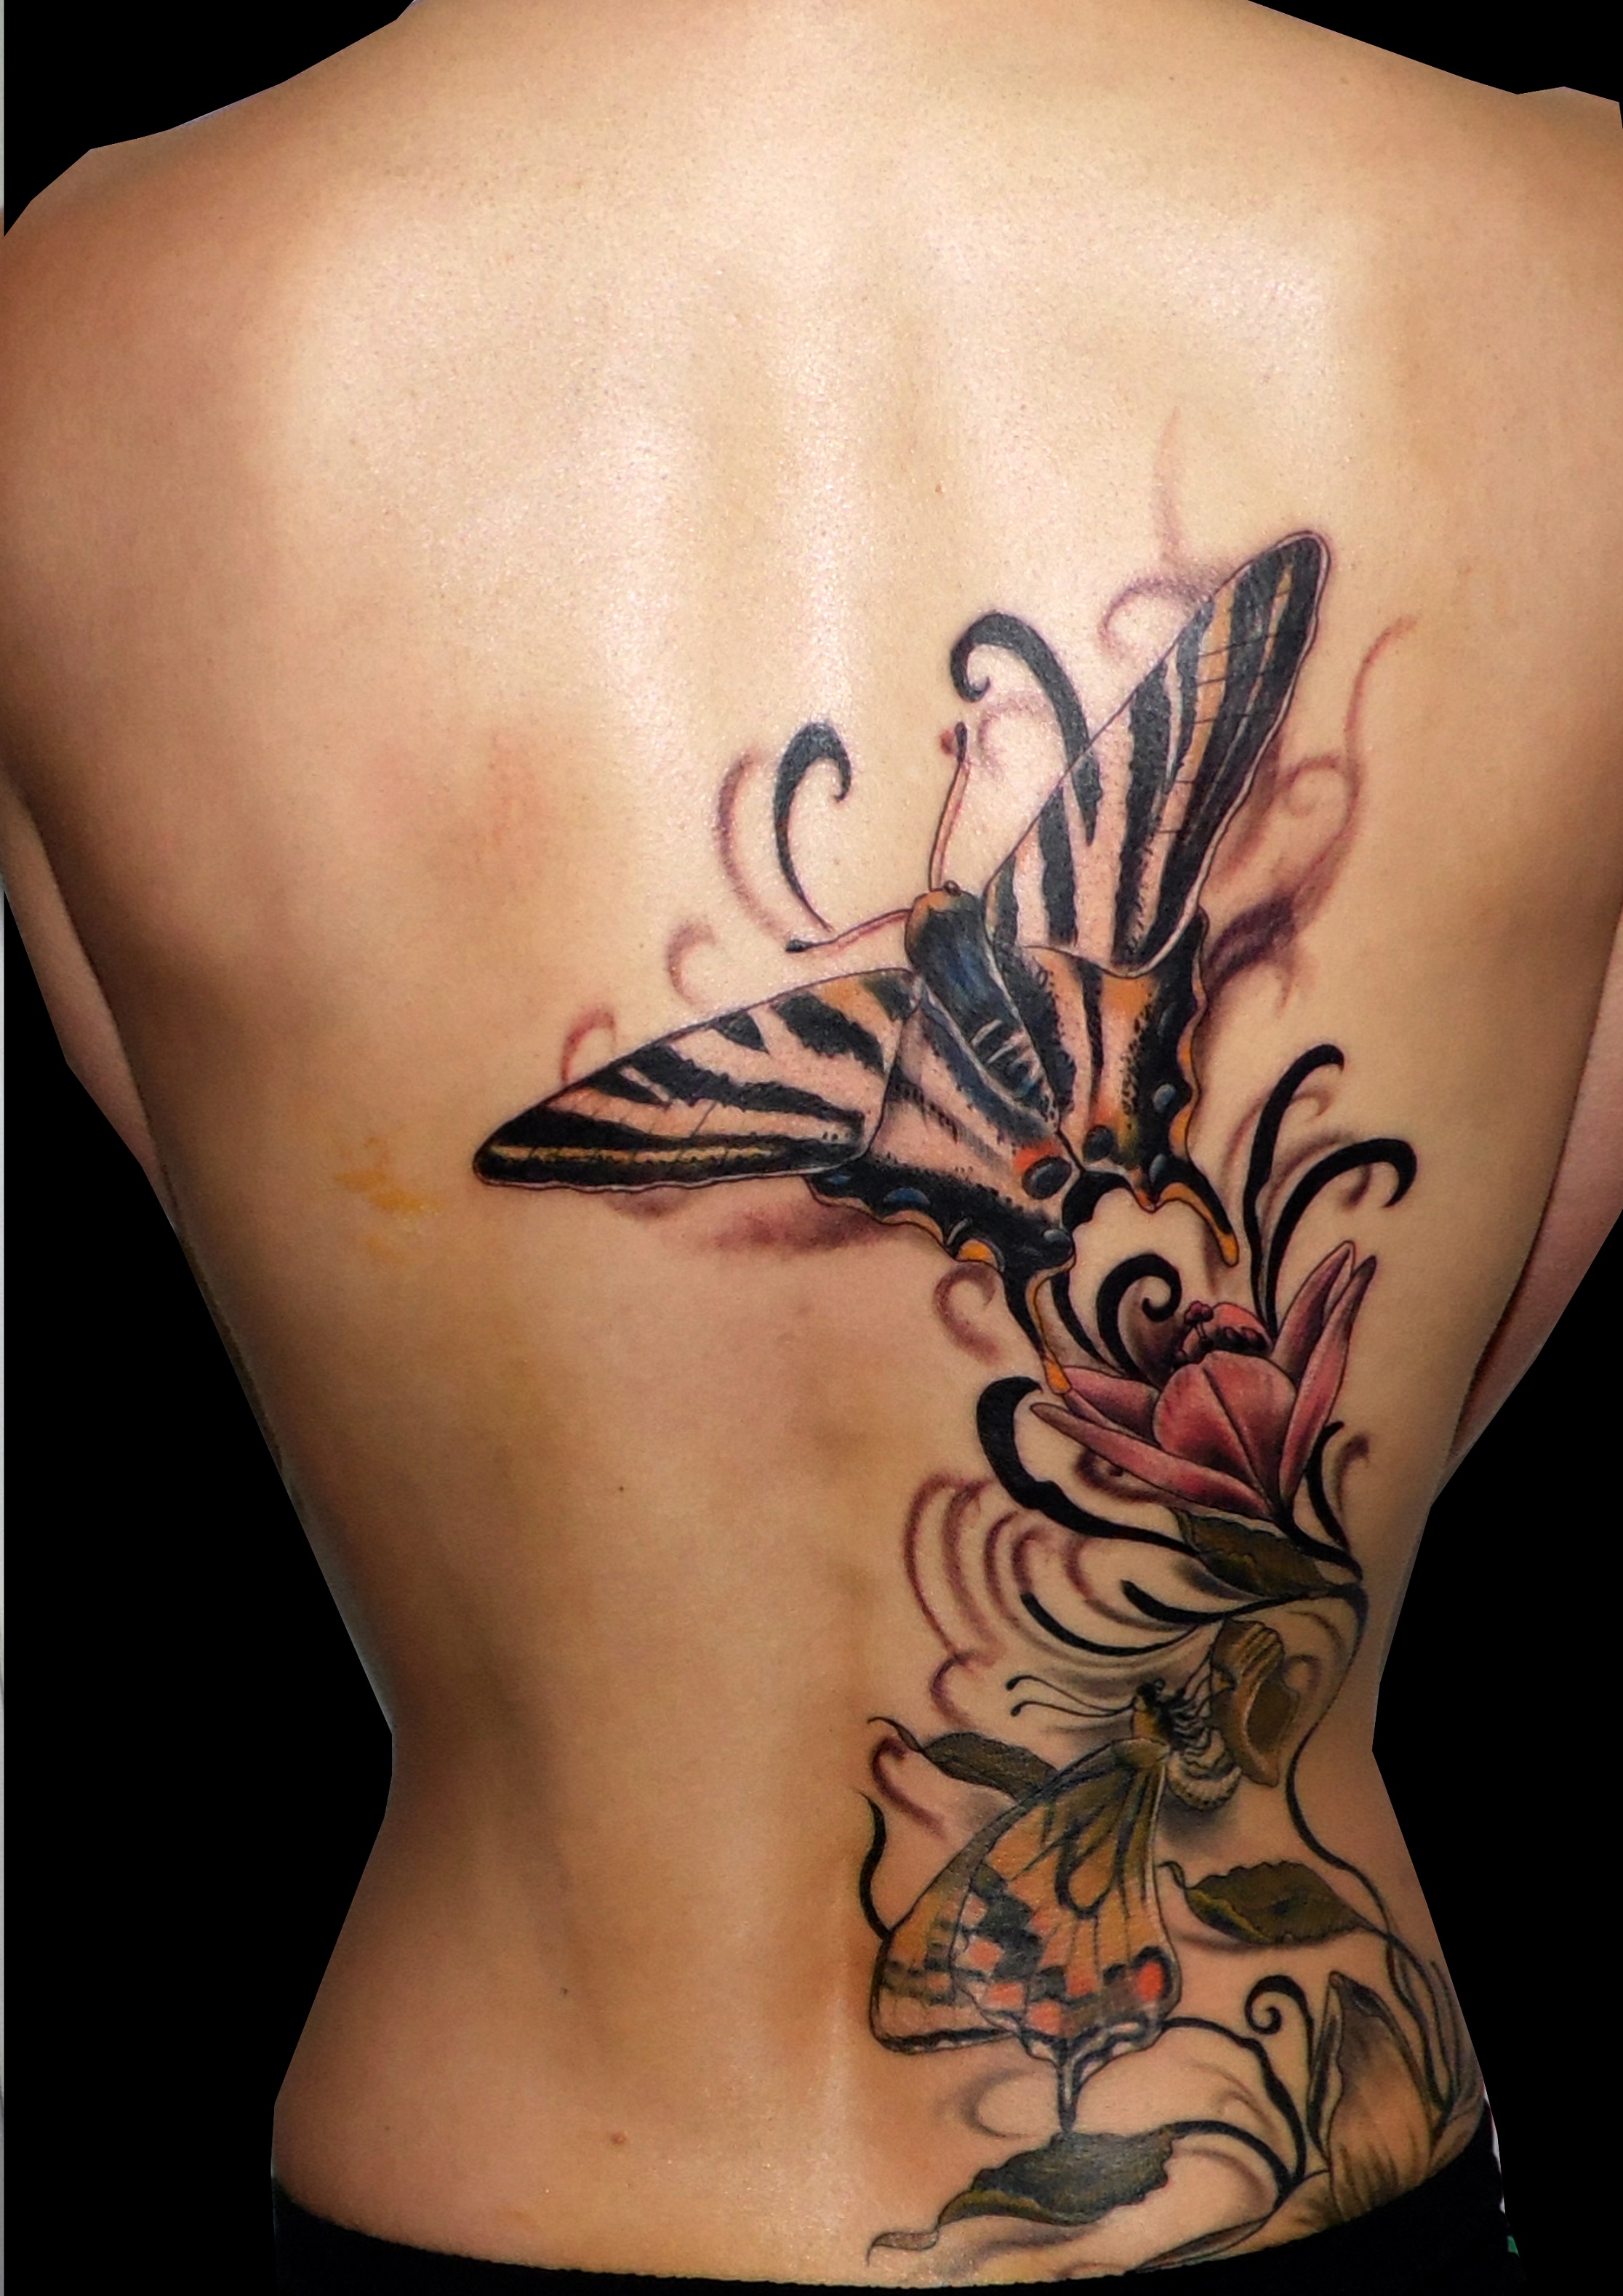 mariposas espalda flores trecedepicas 13depicas tattoo jaca huesca madein tatuajes españa spain color